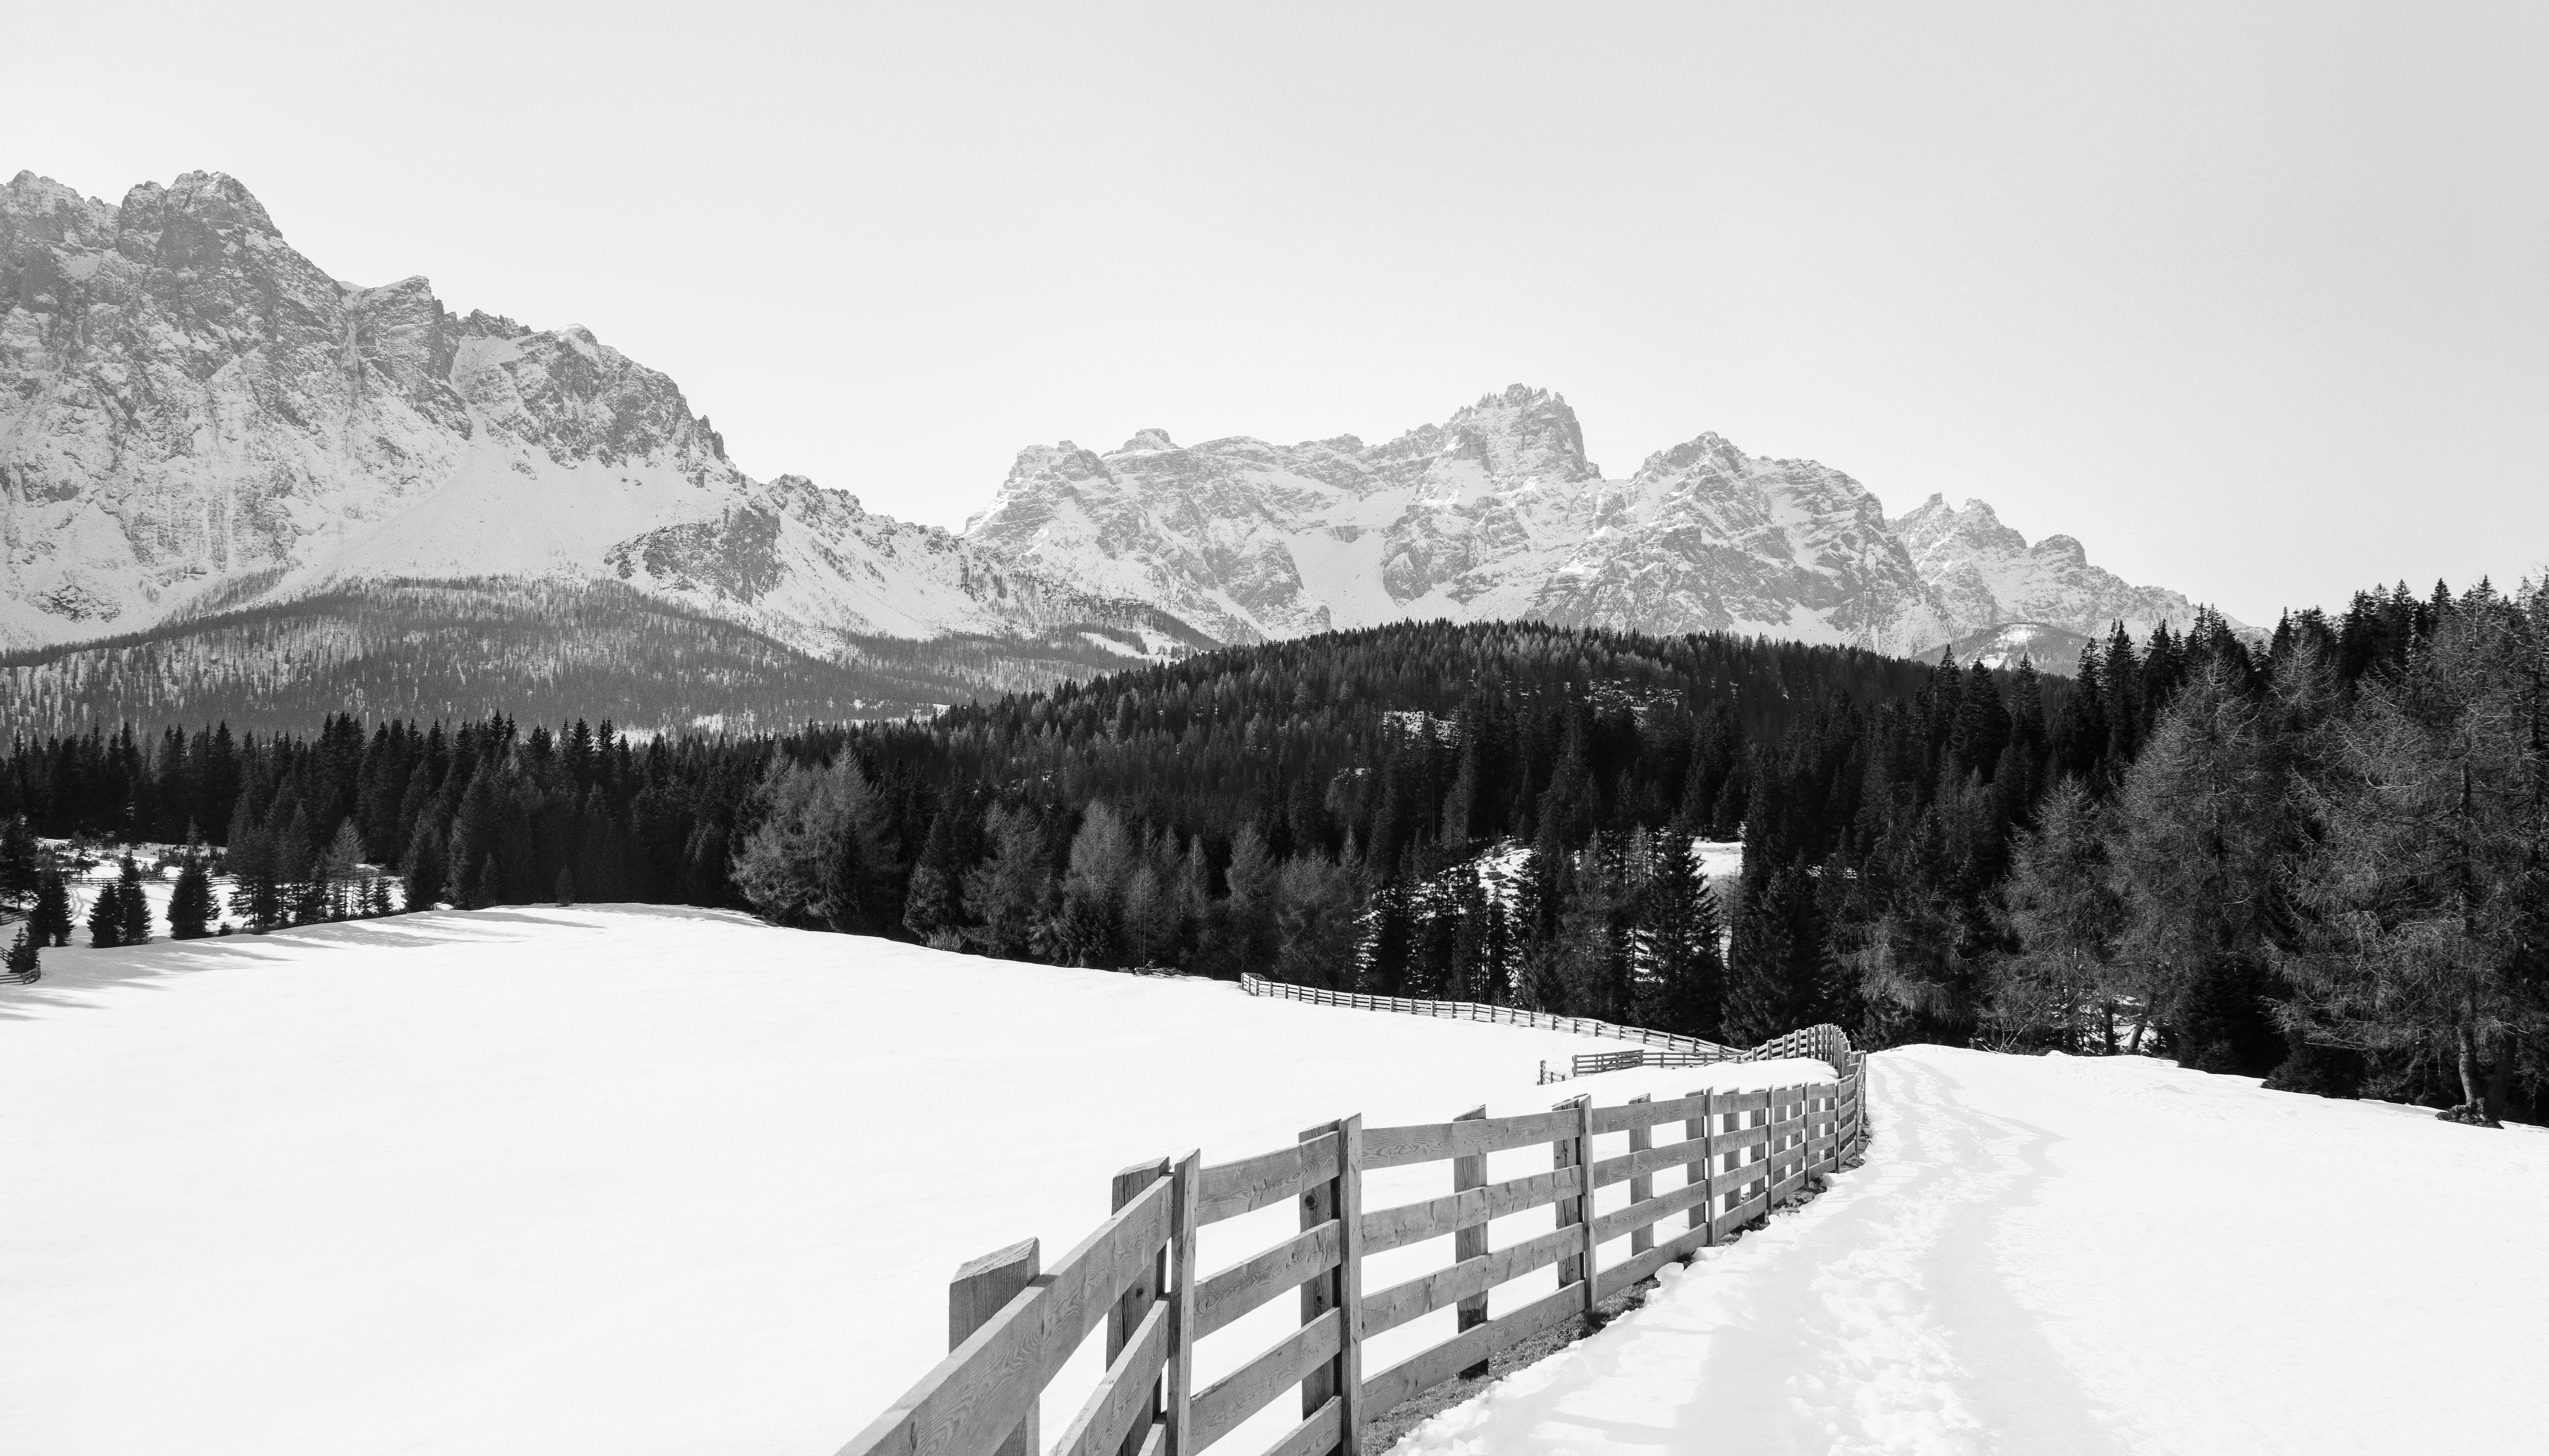 Ugne Pouwell Black and White Photograph – Dolomites No.2, Analogue Schwarz-Weiß-Gebirgefotografie, Ltd. 20